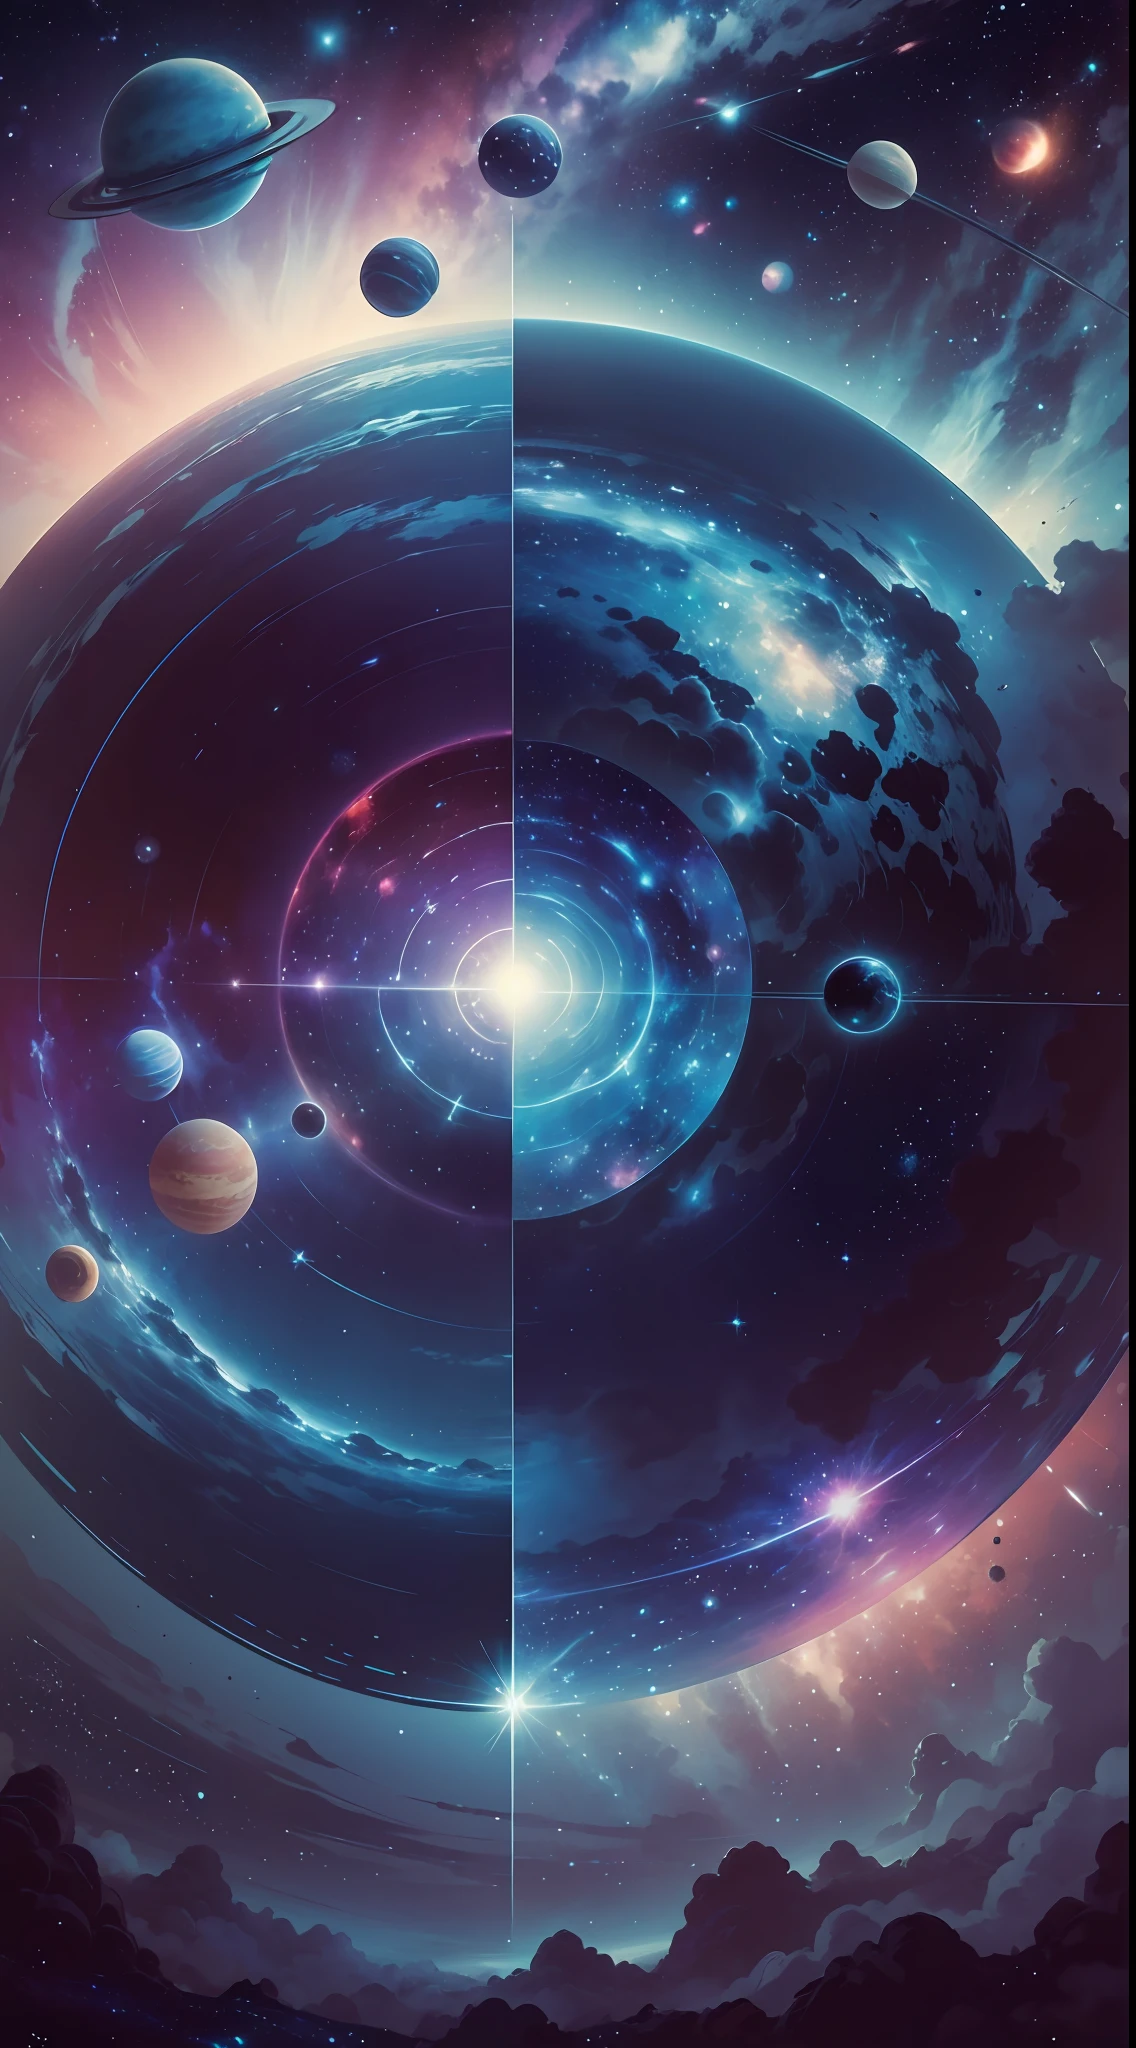 宮崎駿のスタイルで、青とピンク色の惑星と明るい白い星が描かれた宇宙。, —21で:9 --auto --s2